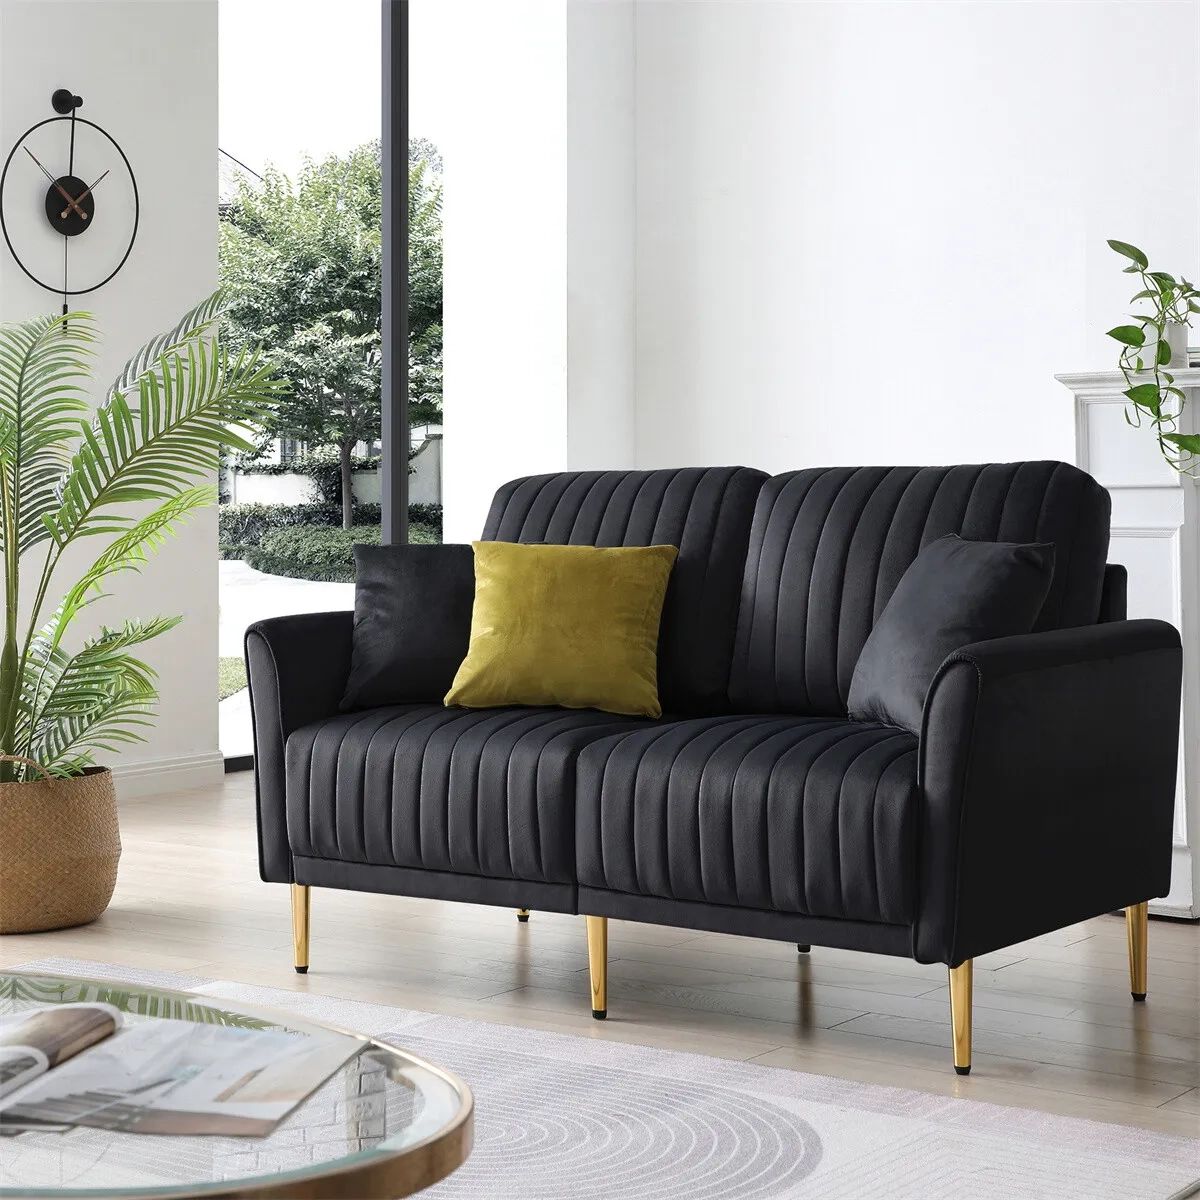 Modern Velvet 2 Seater Sofa Chanel Tufted Loveseat For Living Room Office  Black | Ebay Within 2 Seater Black Velvet Sofa Beds (Photo 2 of 15)